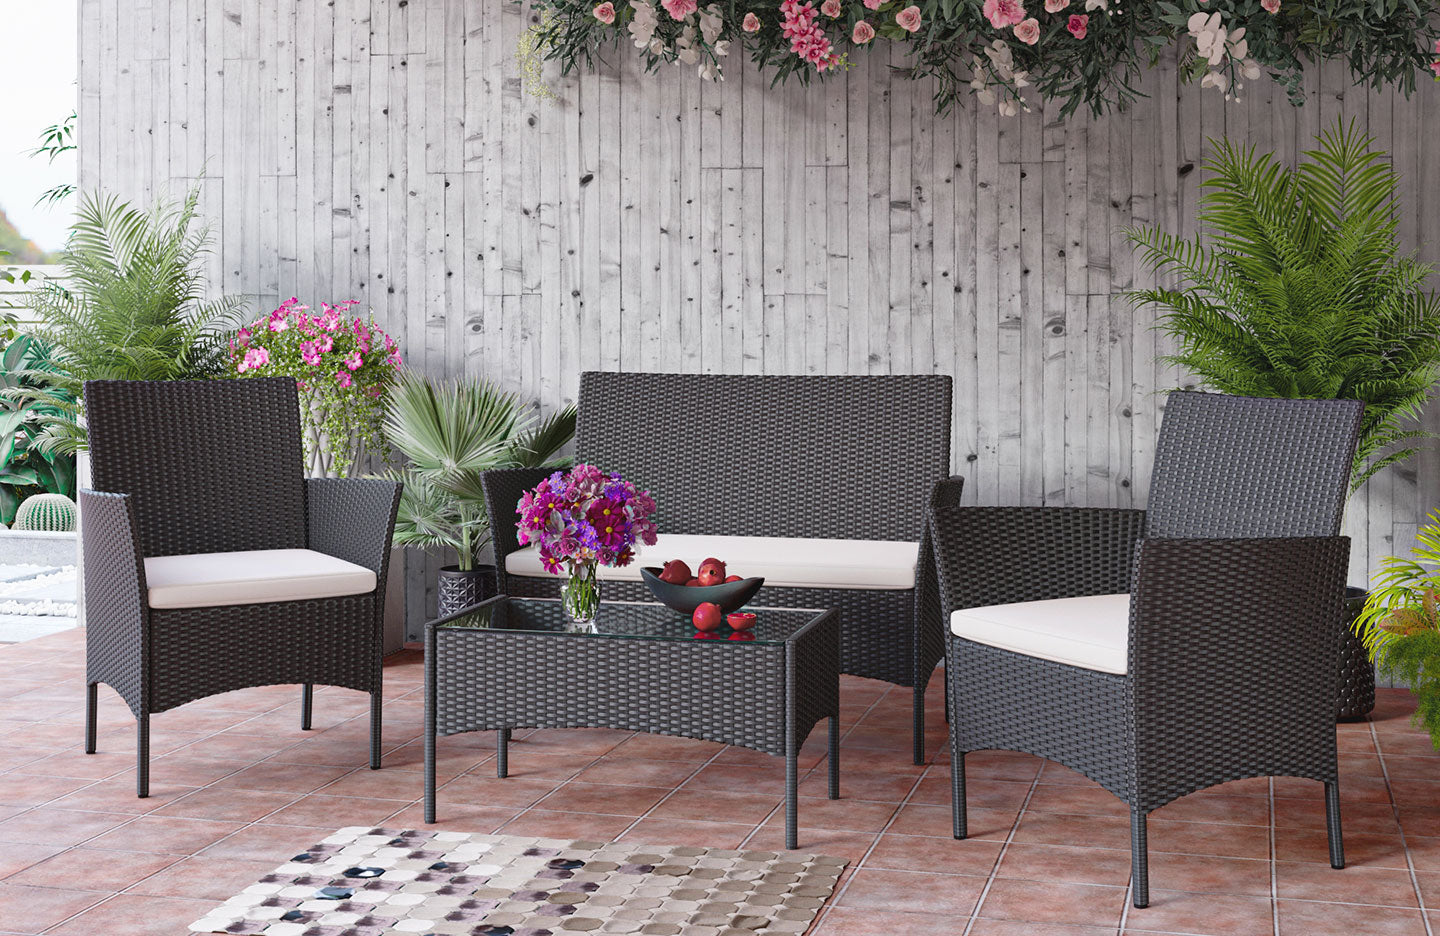 Ensemble de meubles de jardin en rotin 4 places avec 2 chaises simples, 1 canapé double et 1 table